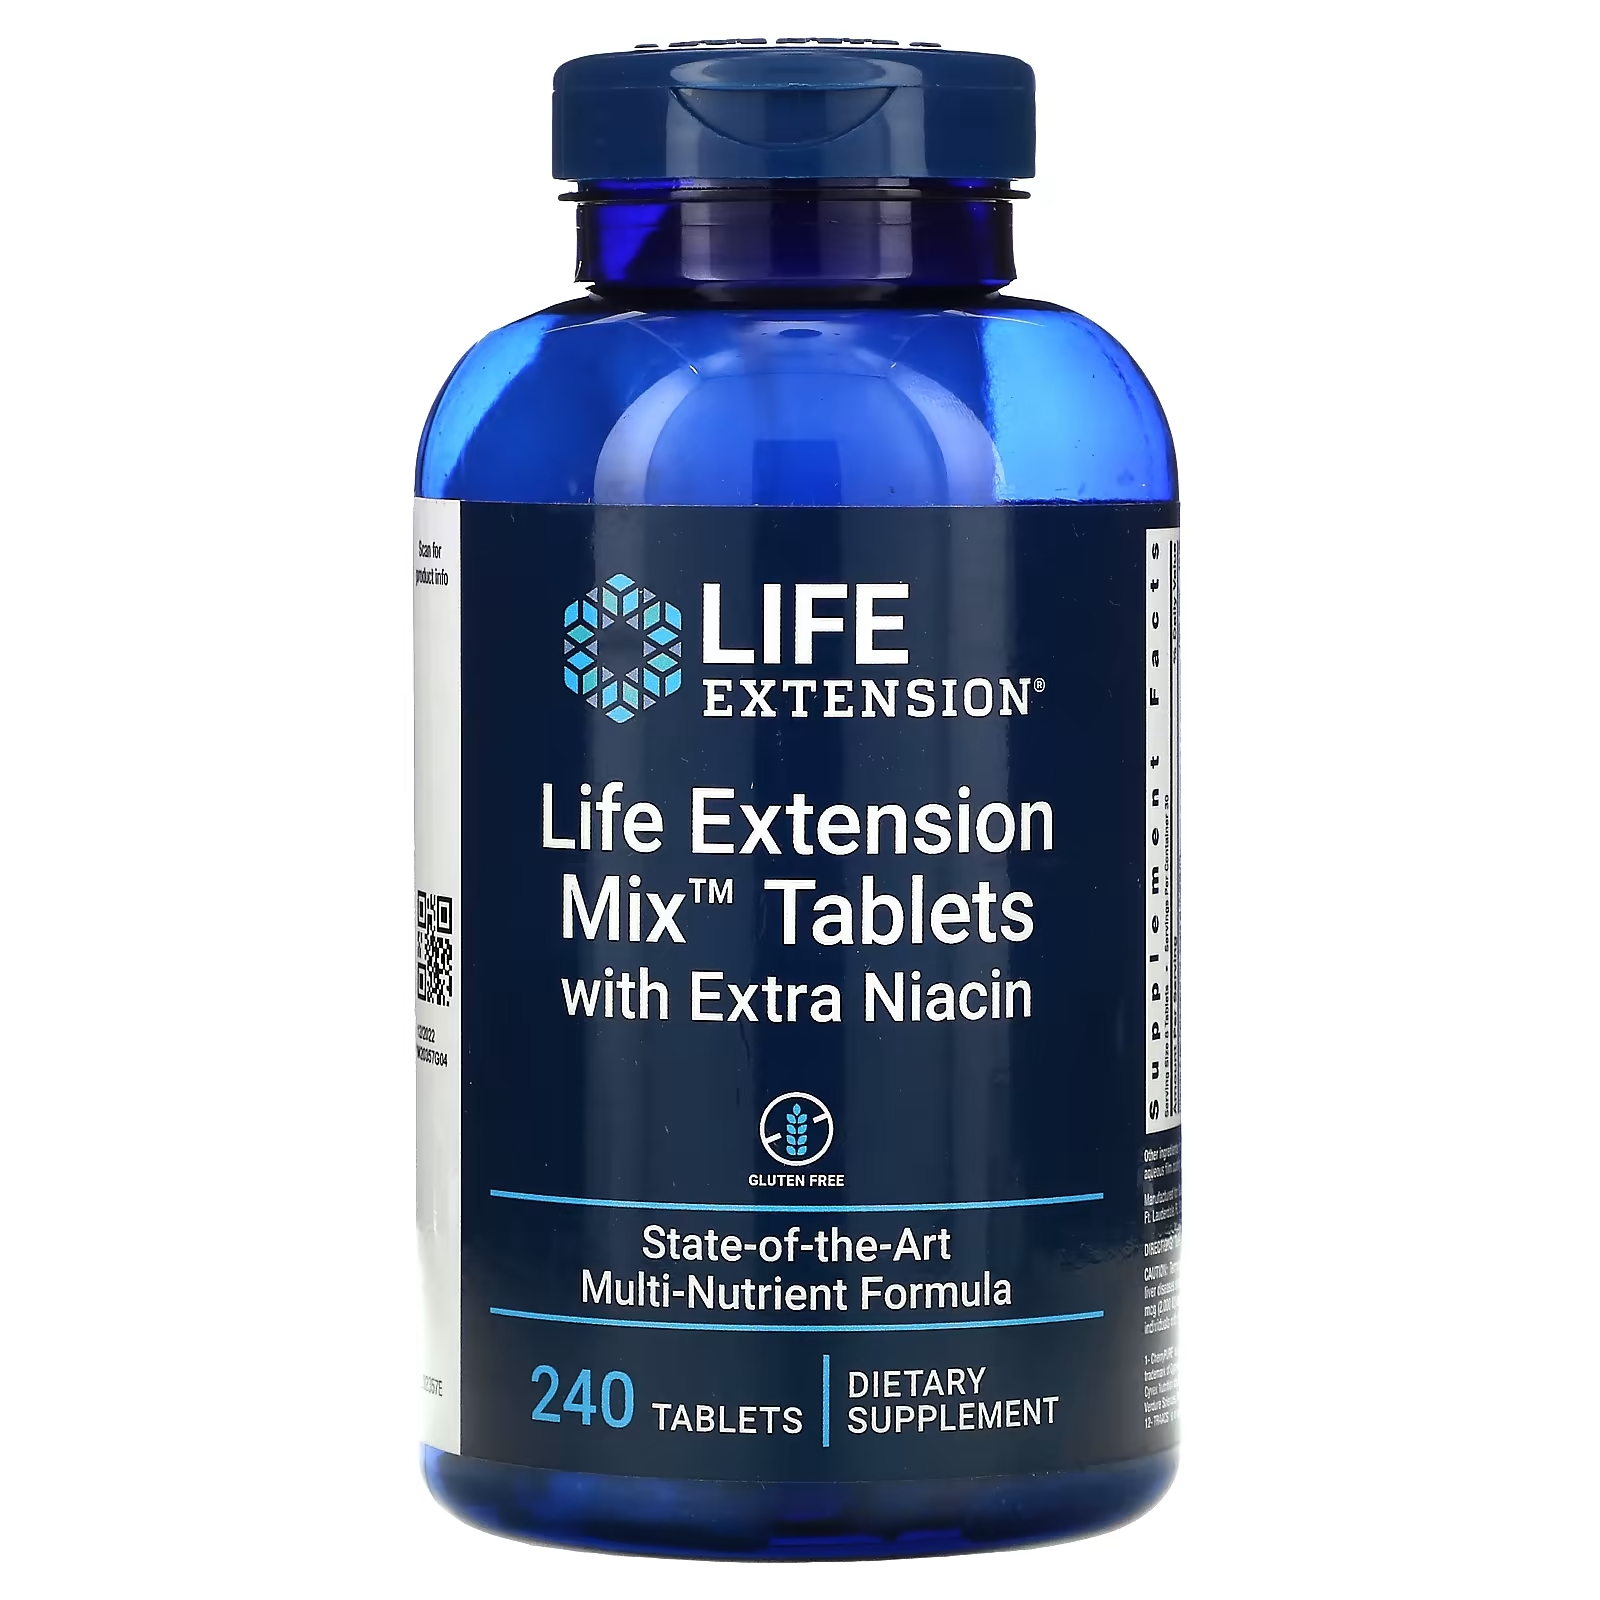 life extension таблетки life extension mix с дополнительным ниацином 240 таблеток Таблетки с Дополнительным Ниацином Life Extension Mix, 240 таблеток